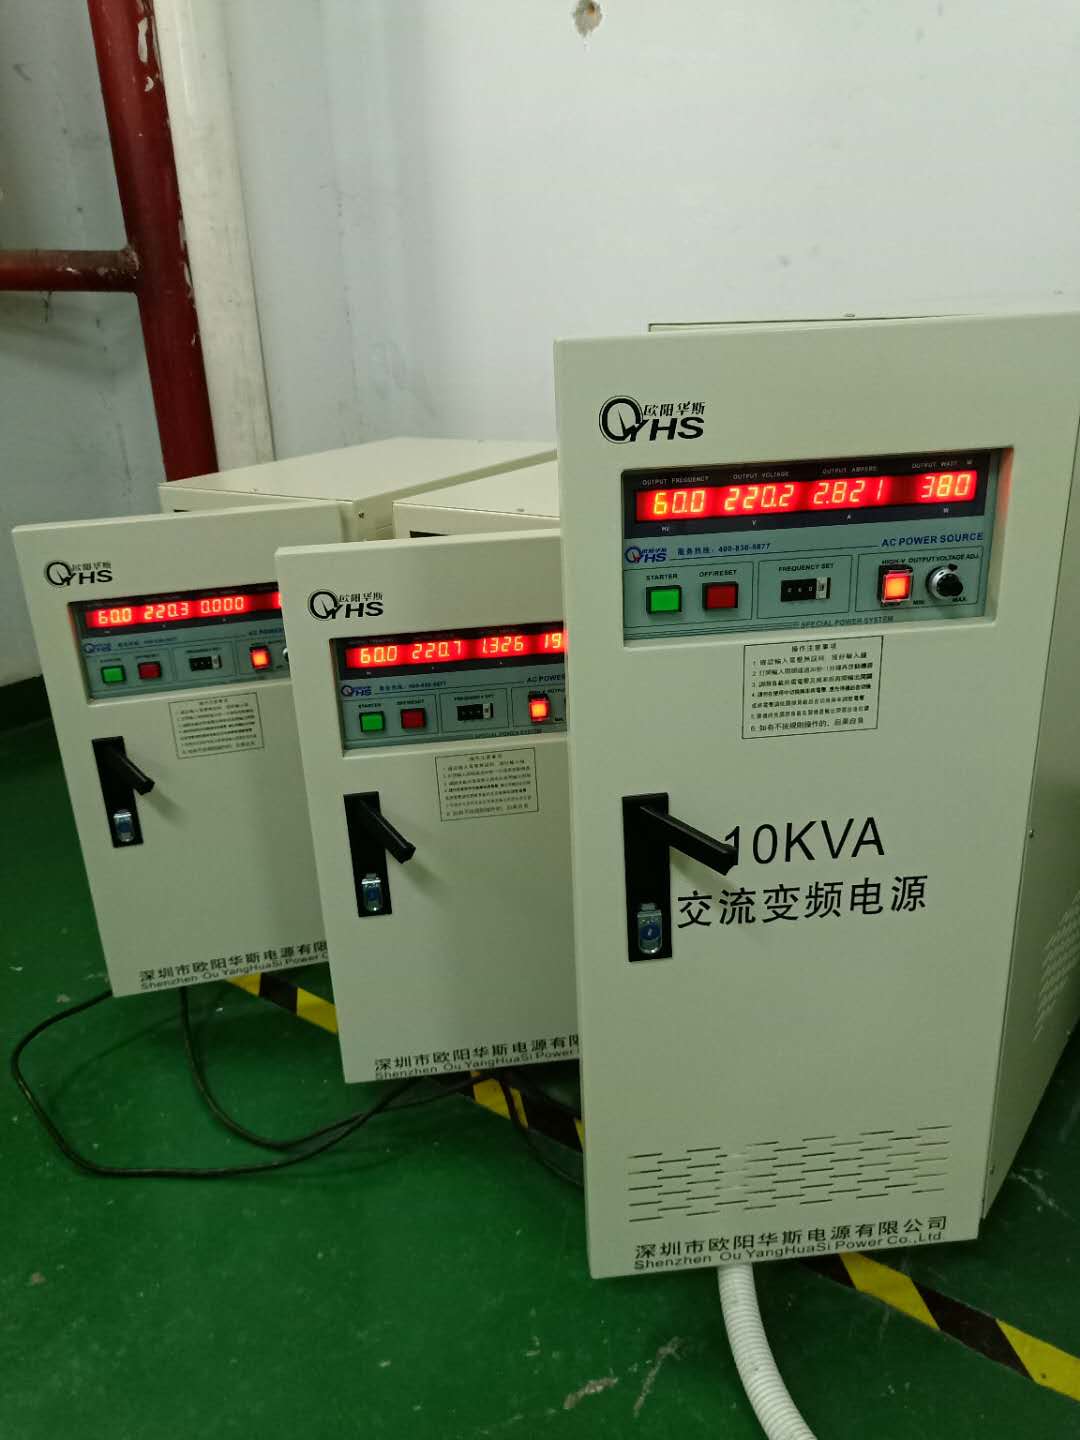 配出口设备15KVA变频电源|15KW变频稳压电源